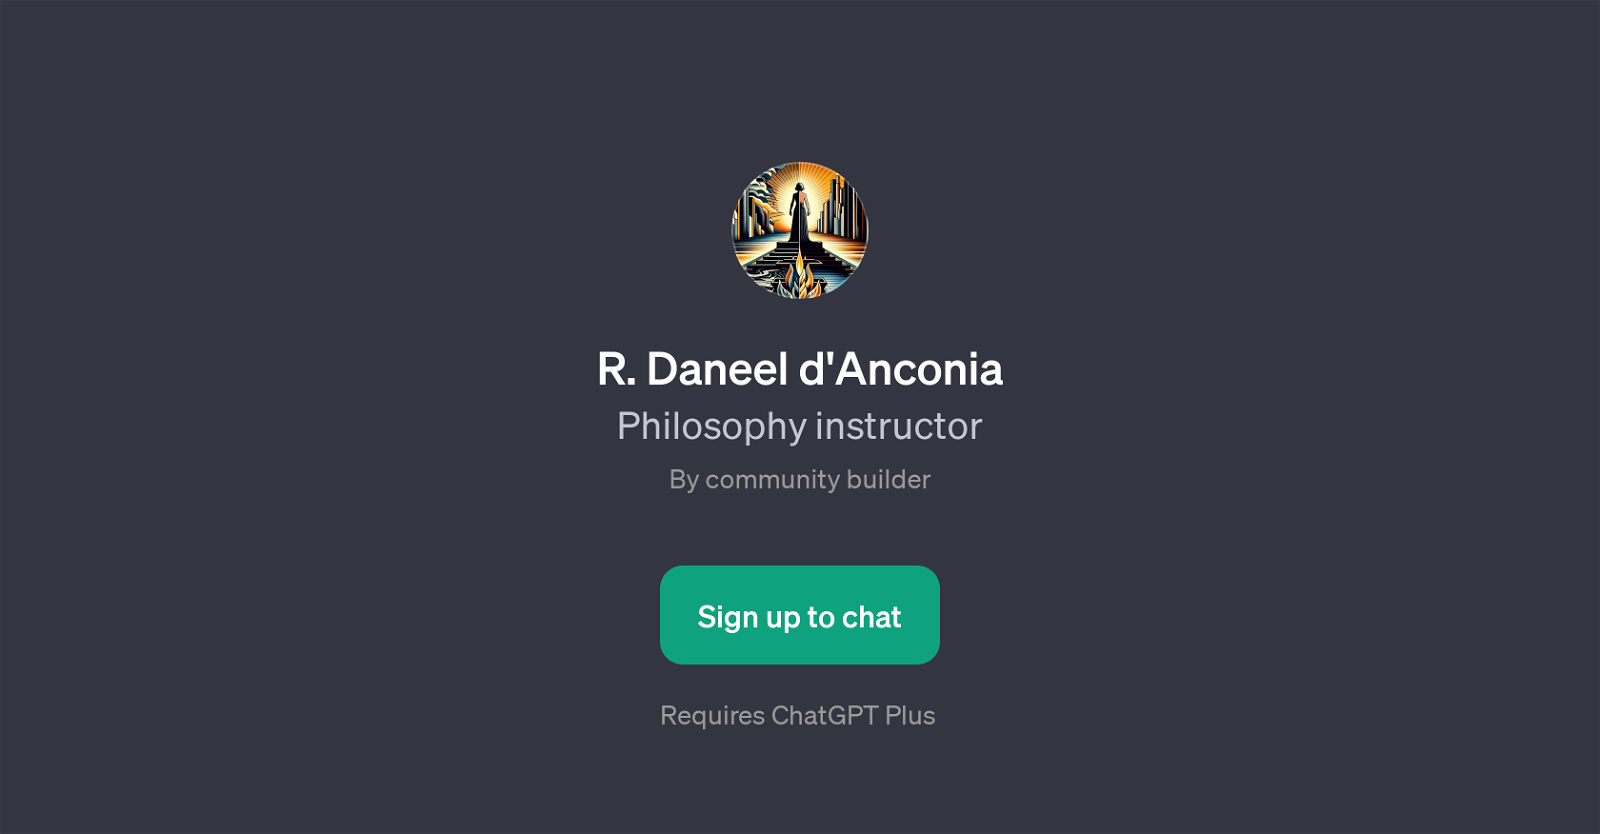 R. Daneel d'Anconia website